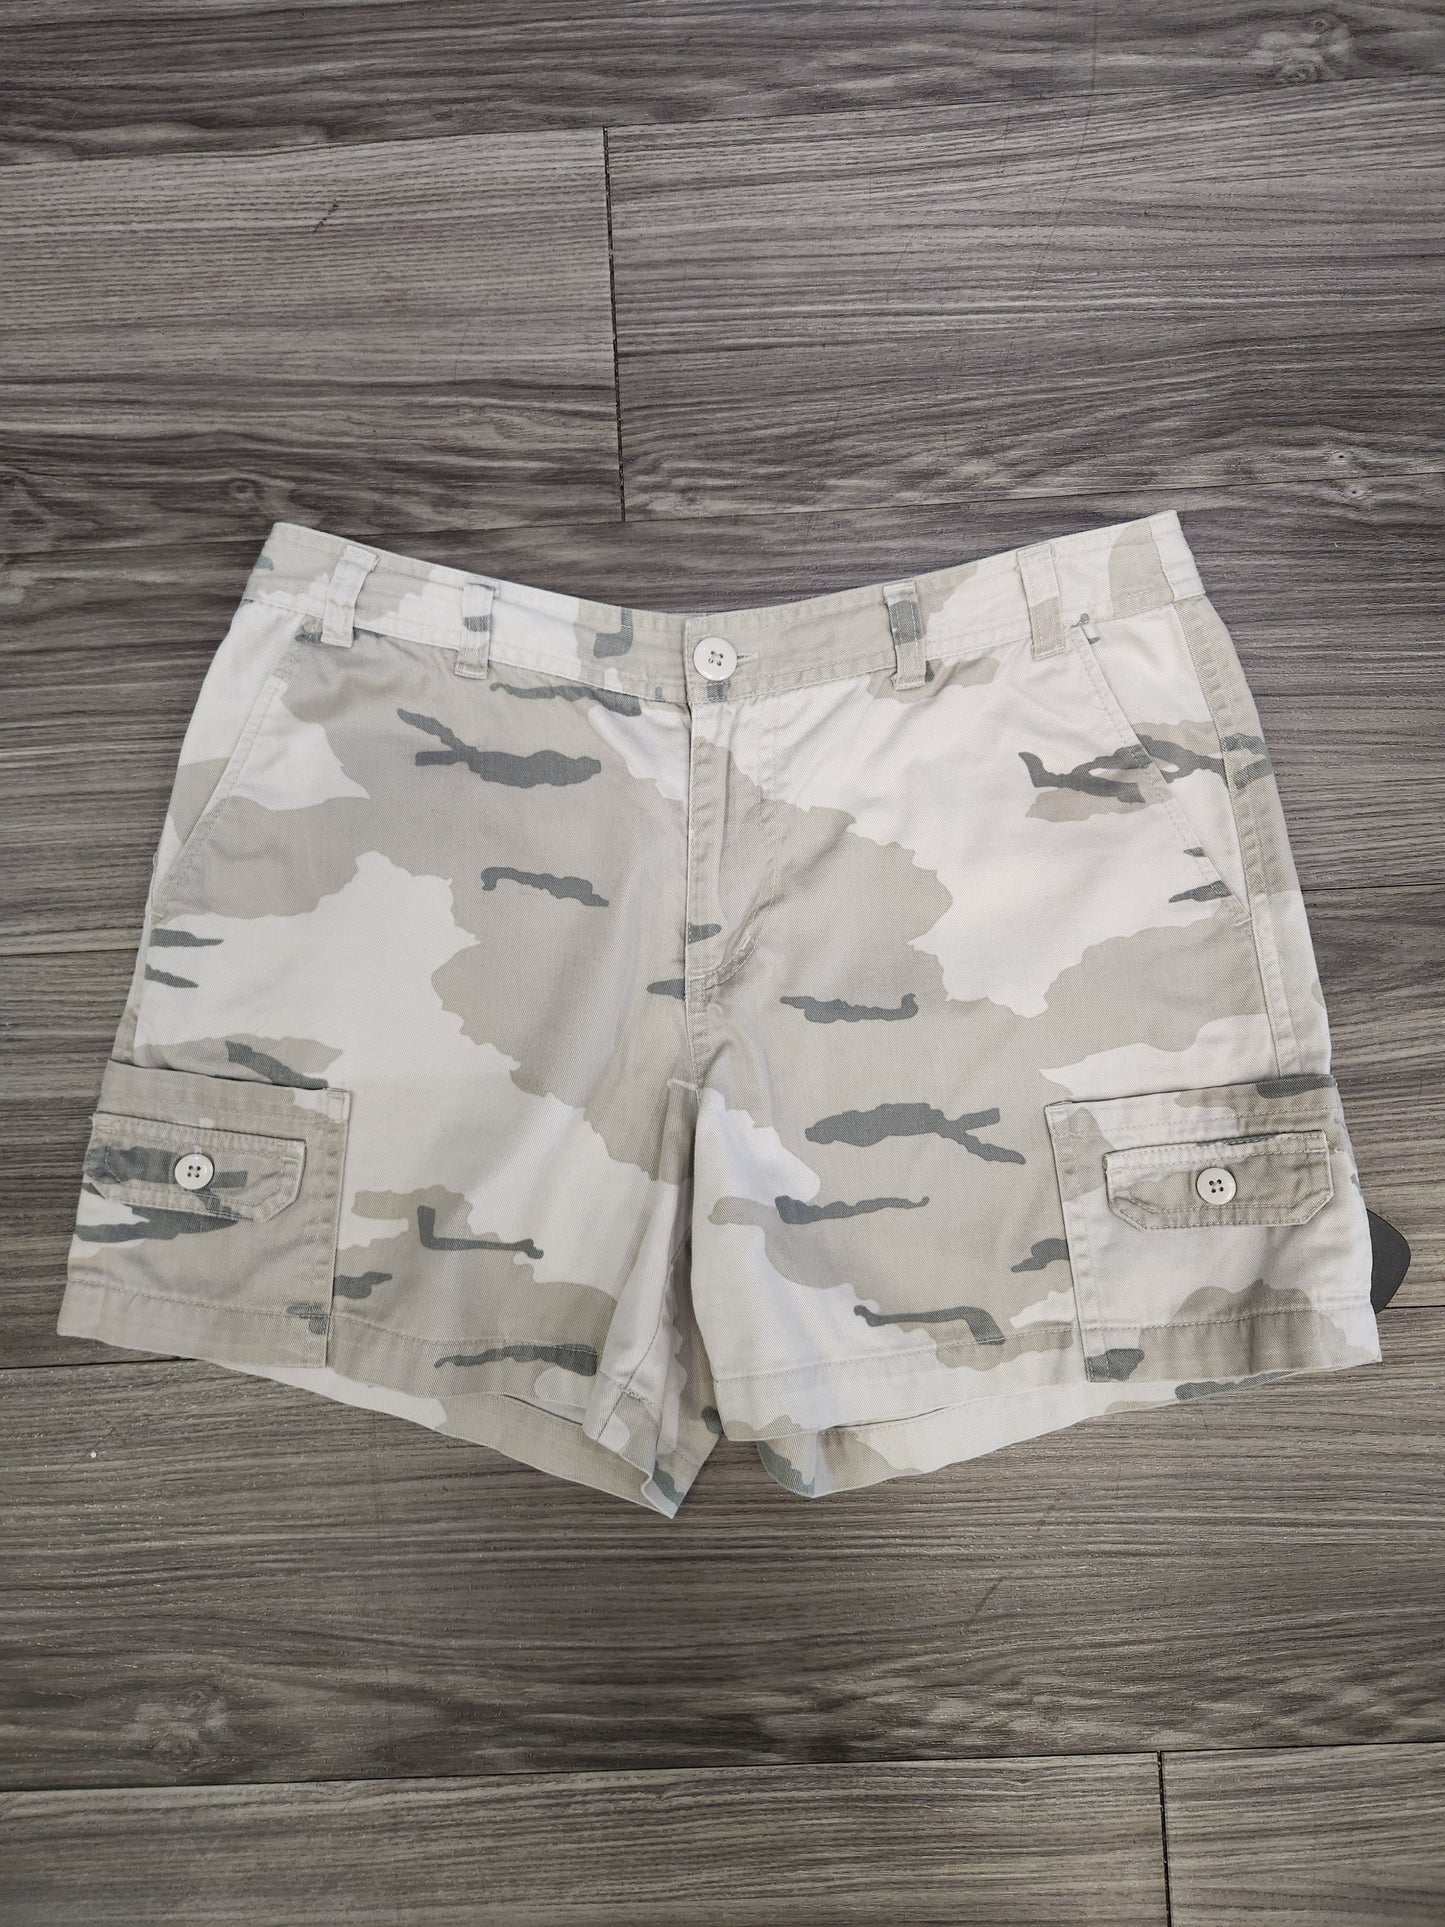 Shorts By Allison Brittney  Size: 10